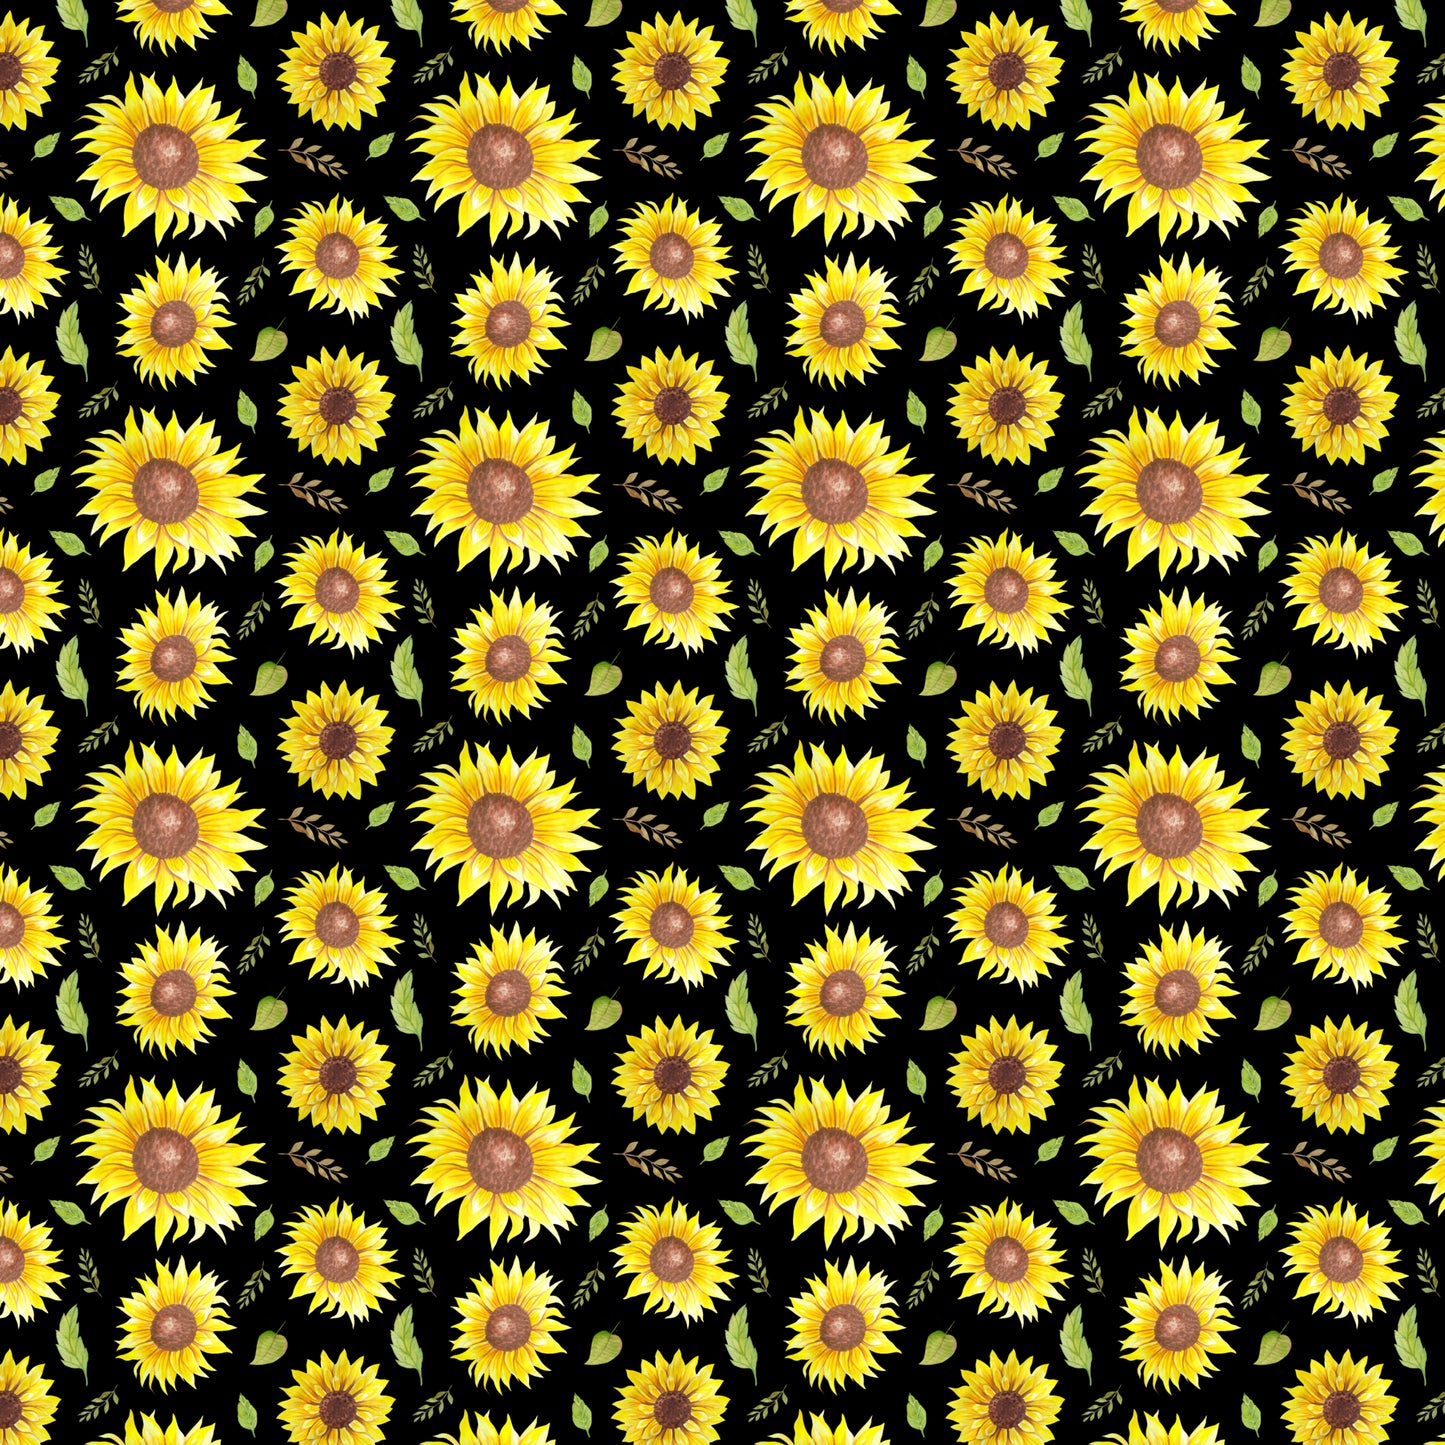 Sunflower 004 Vinyl Sheet